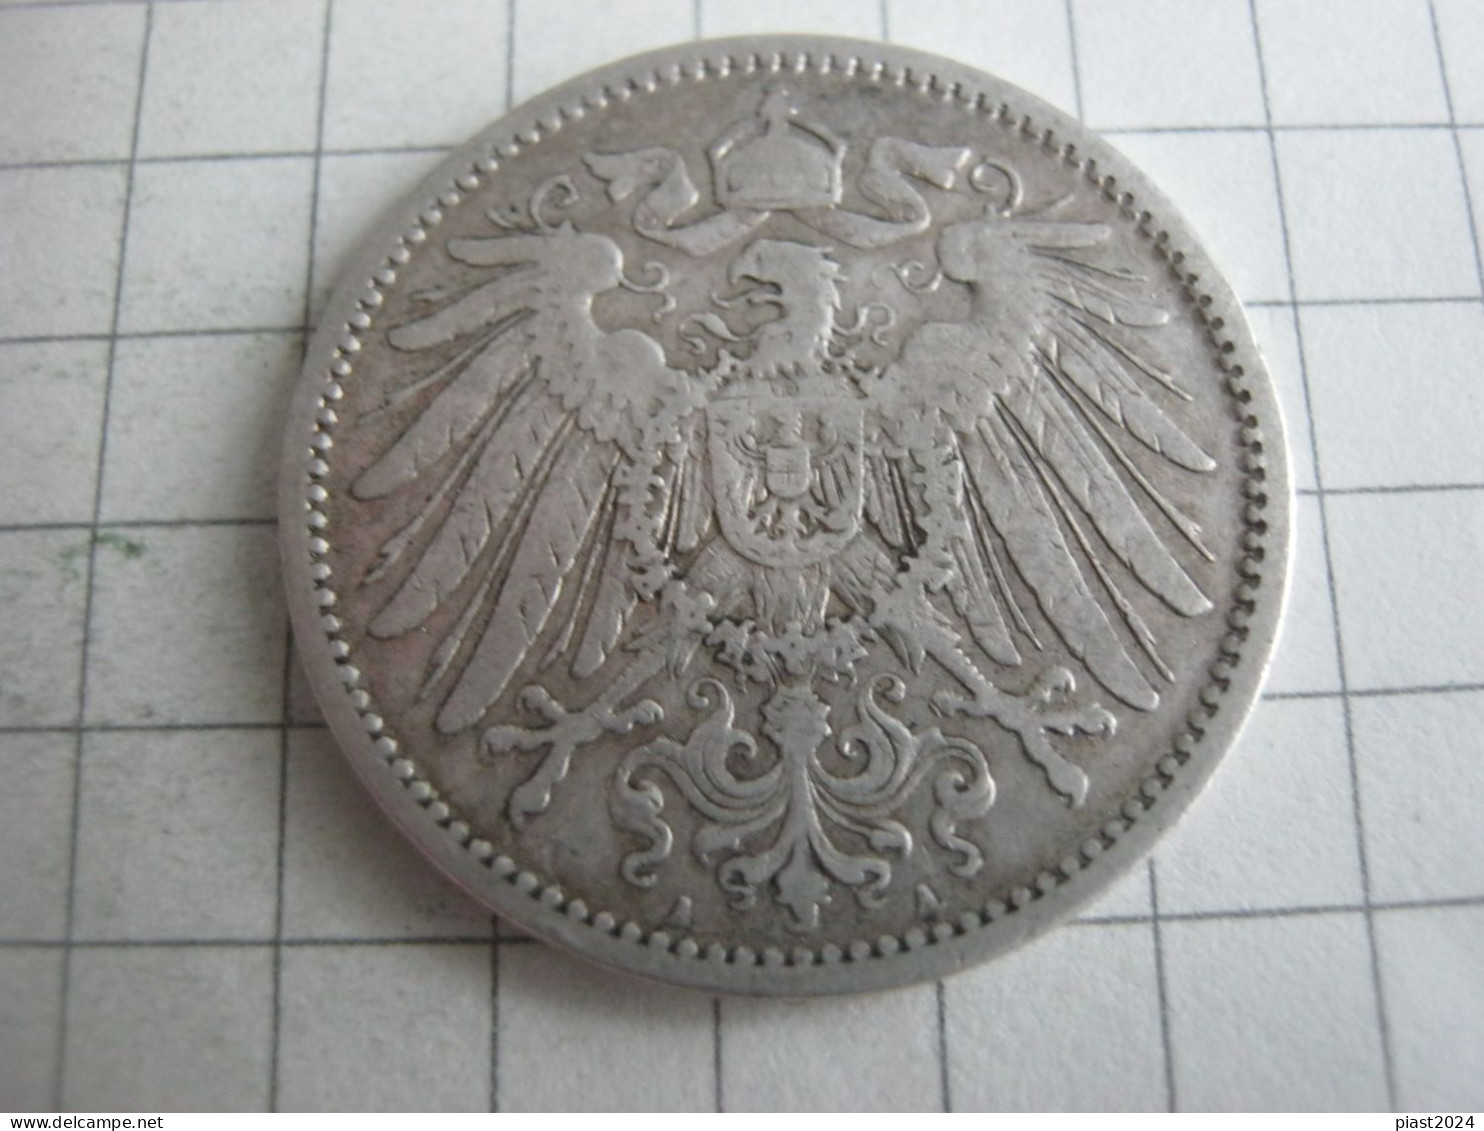 Germany 1 Mark 1893 A - 1 Mark